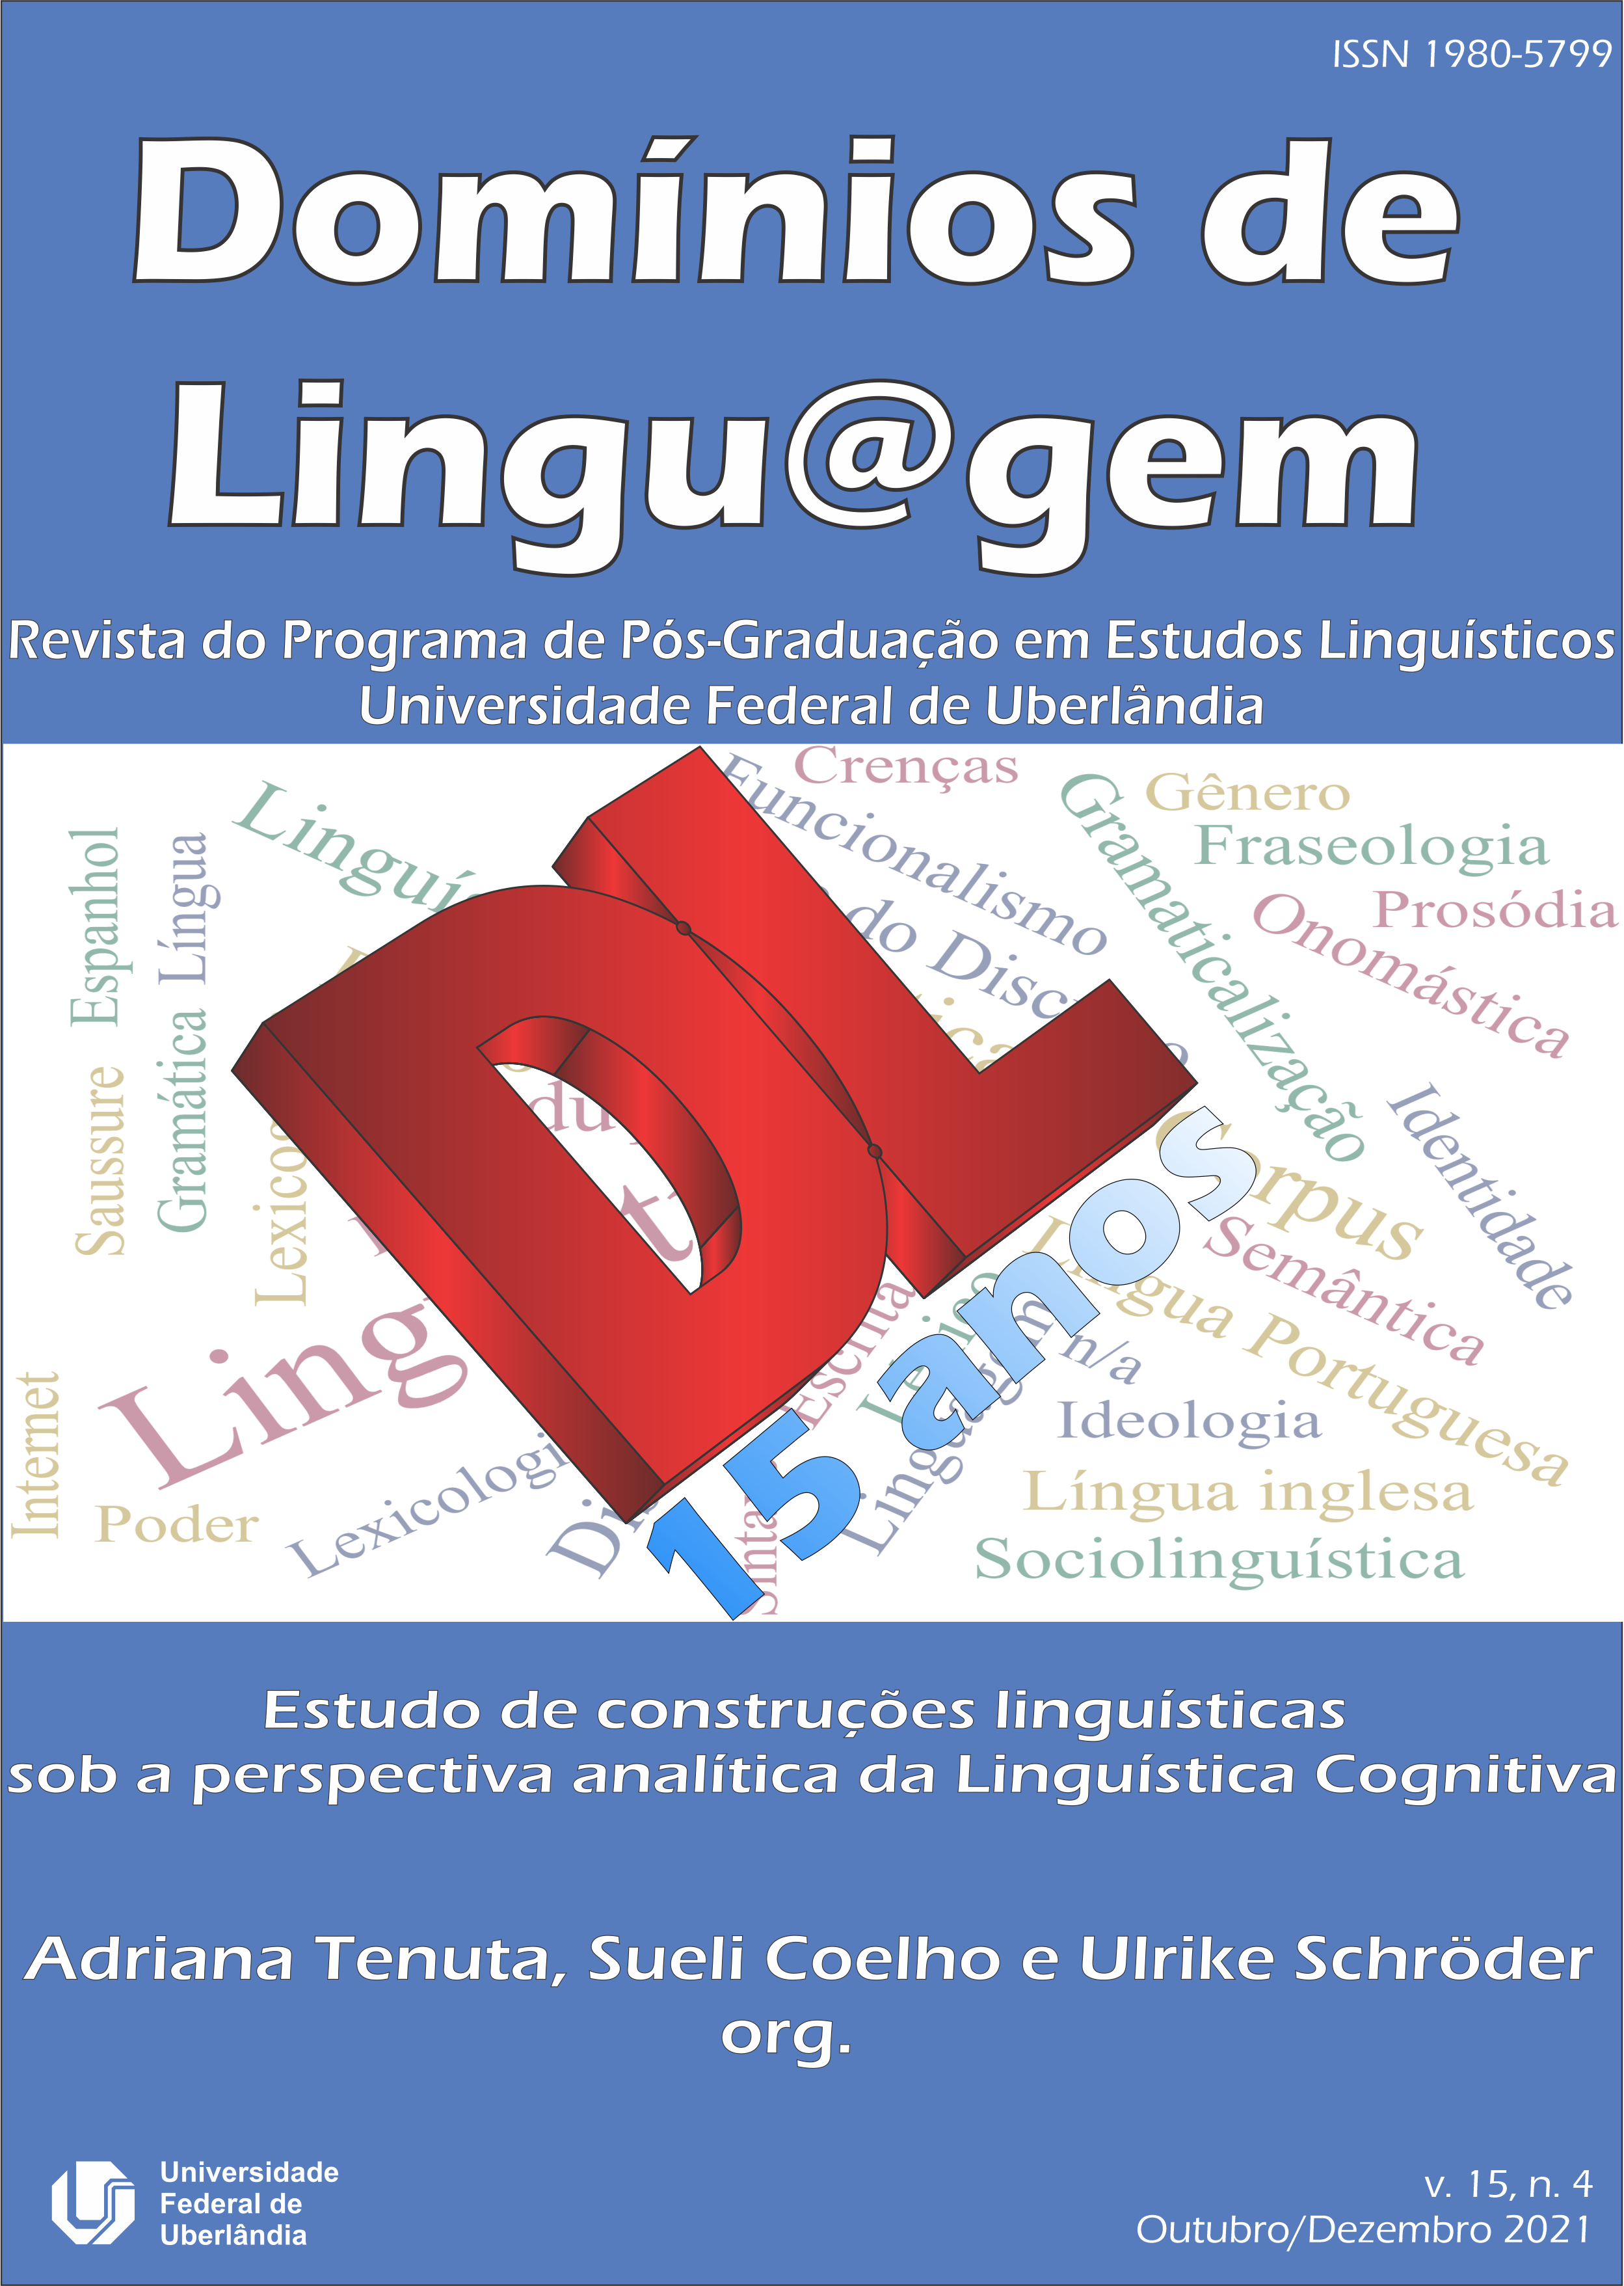 					Visualizar v. 15 n. 4 (2021): Estudo de construções linguísticas sob a perspectiva analítica da Linguística Cognitiva
				